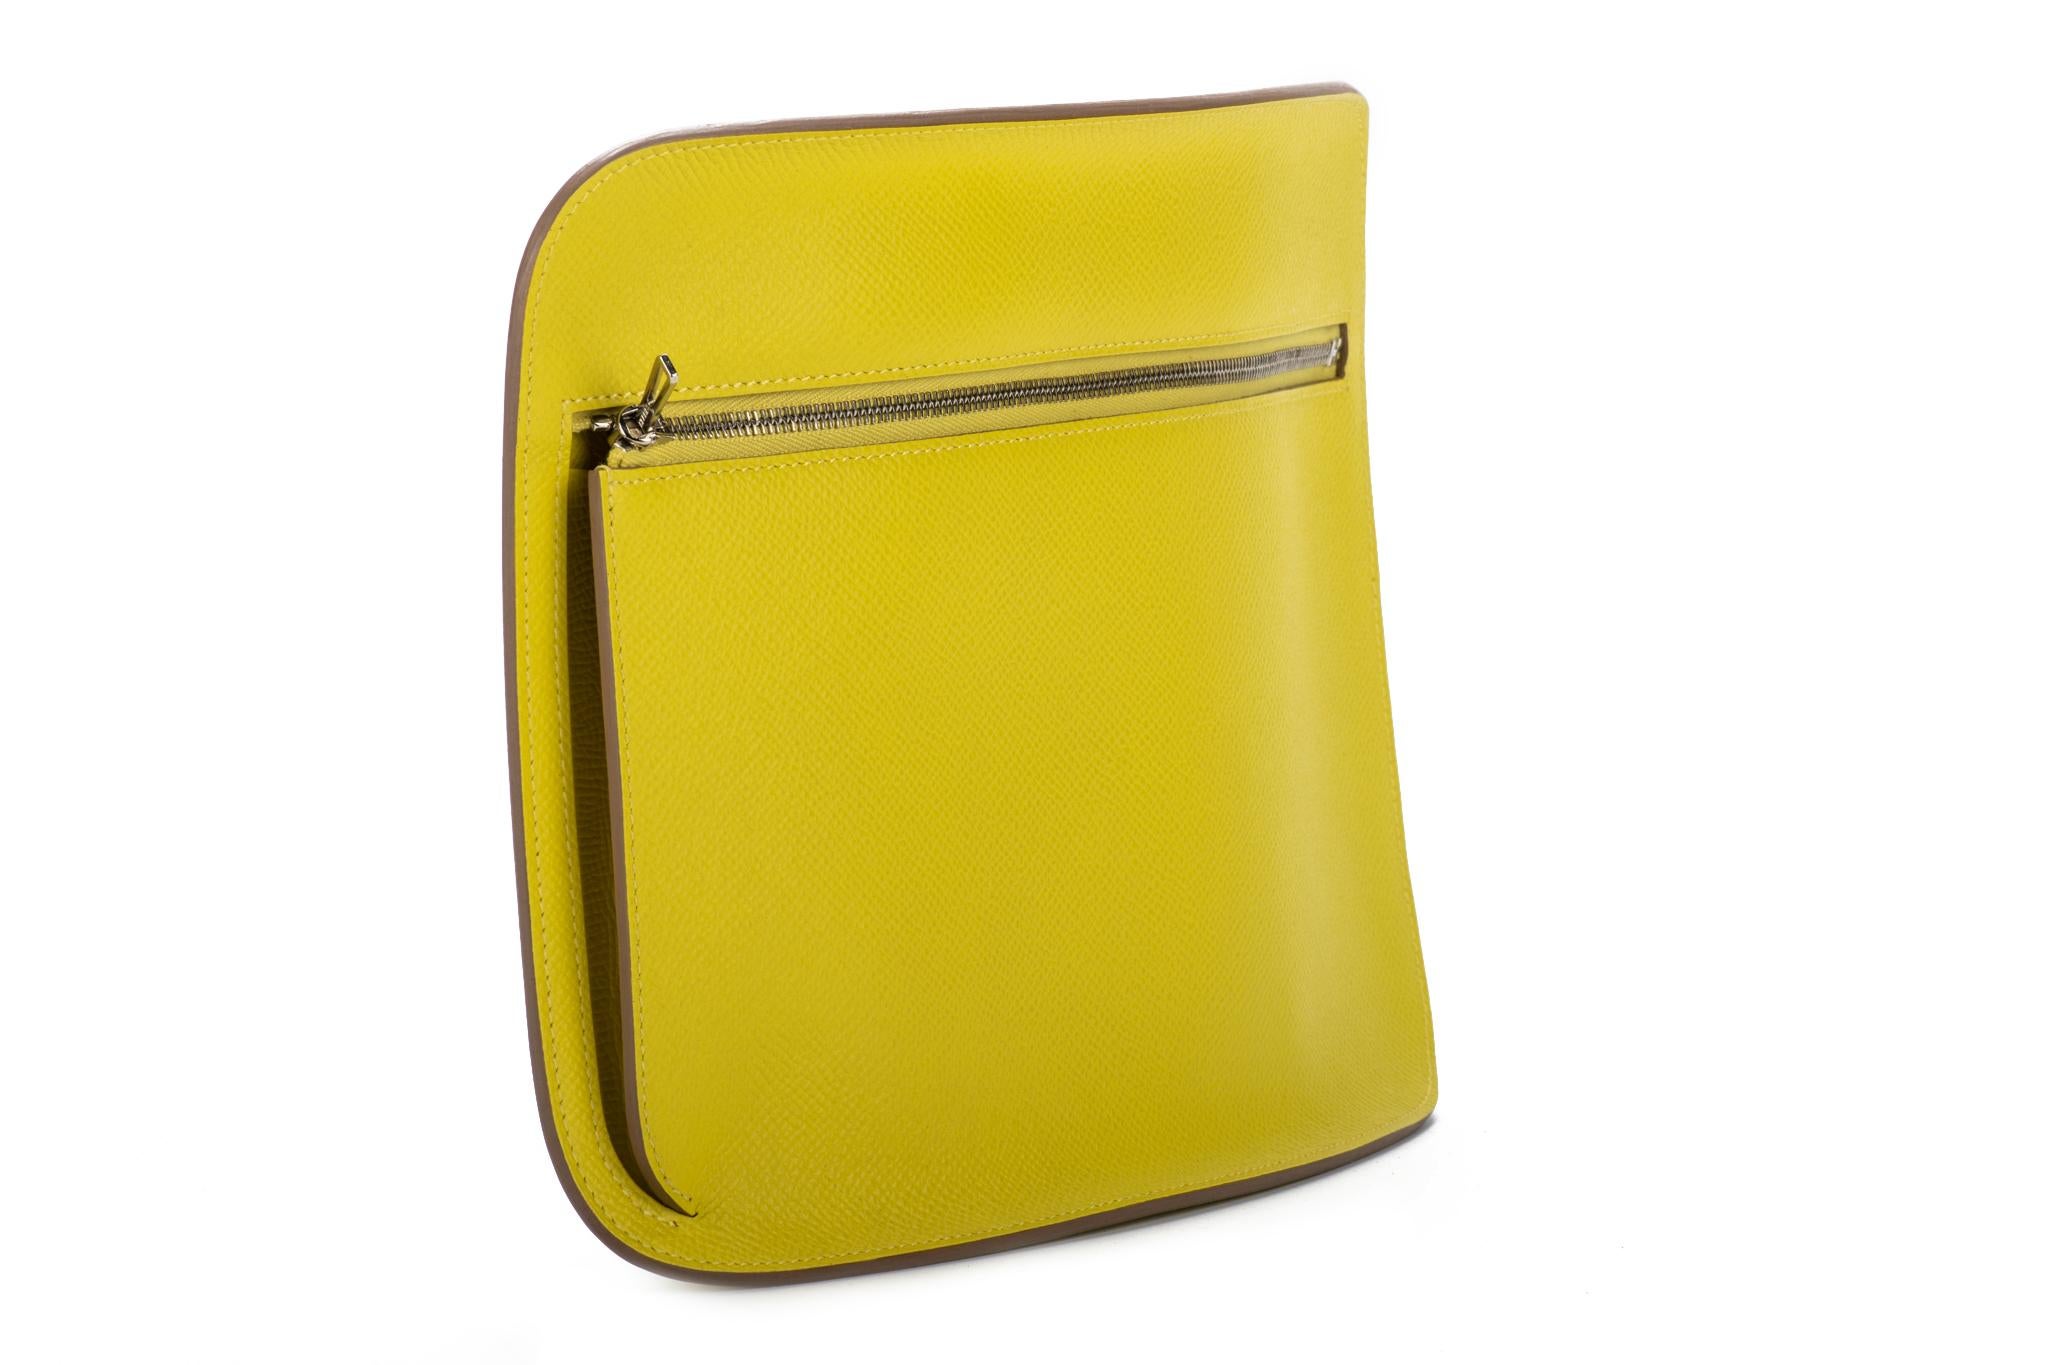 lemon yellow clutch bag